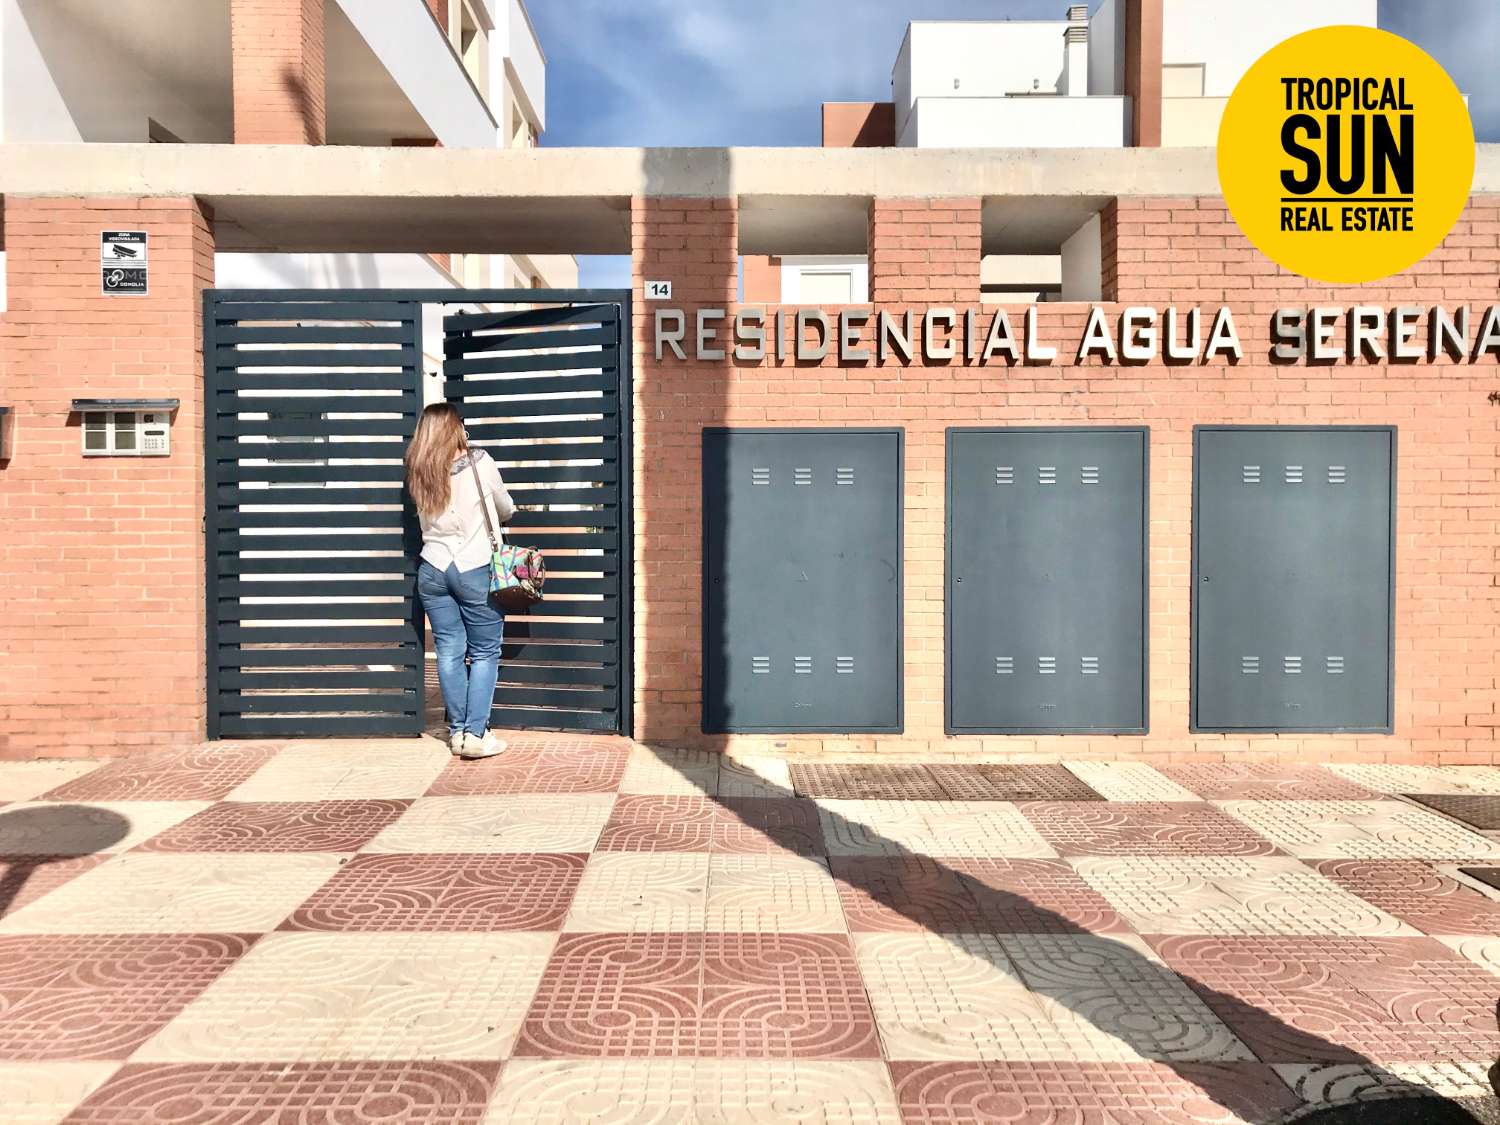 Descubre el paraíso en Roquetas de Mar: Hermosa vivienda de 3 dormitorios en el residencial Aguaserena